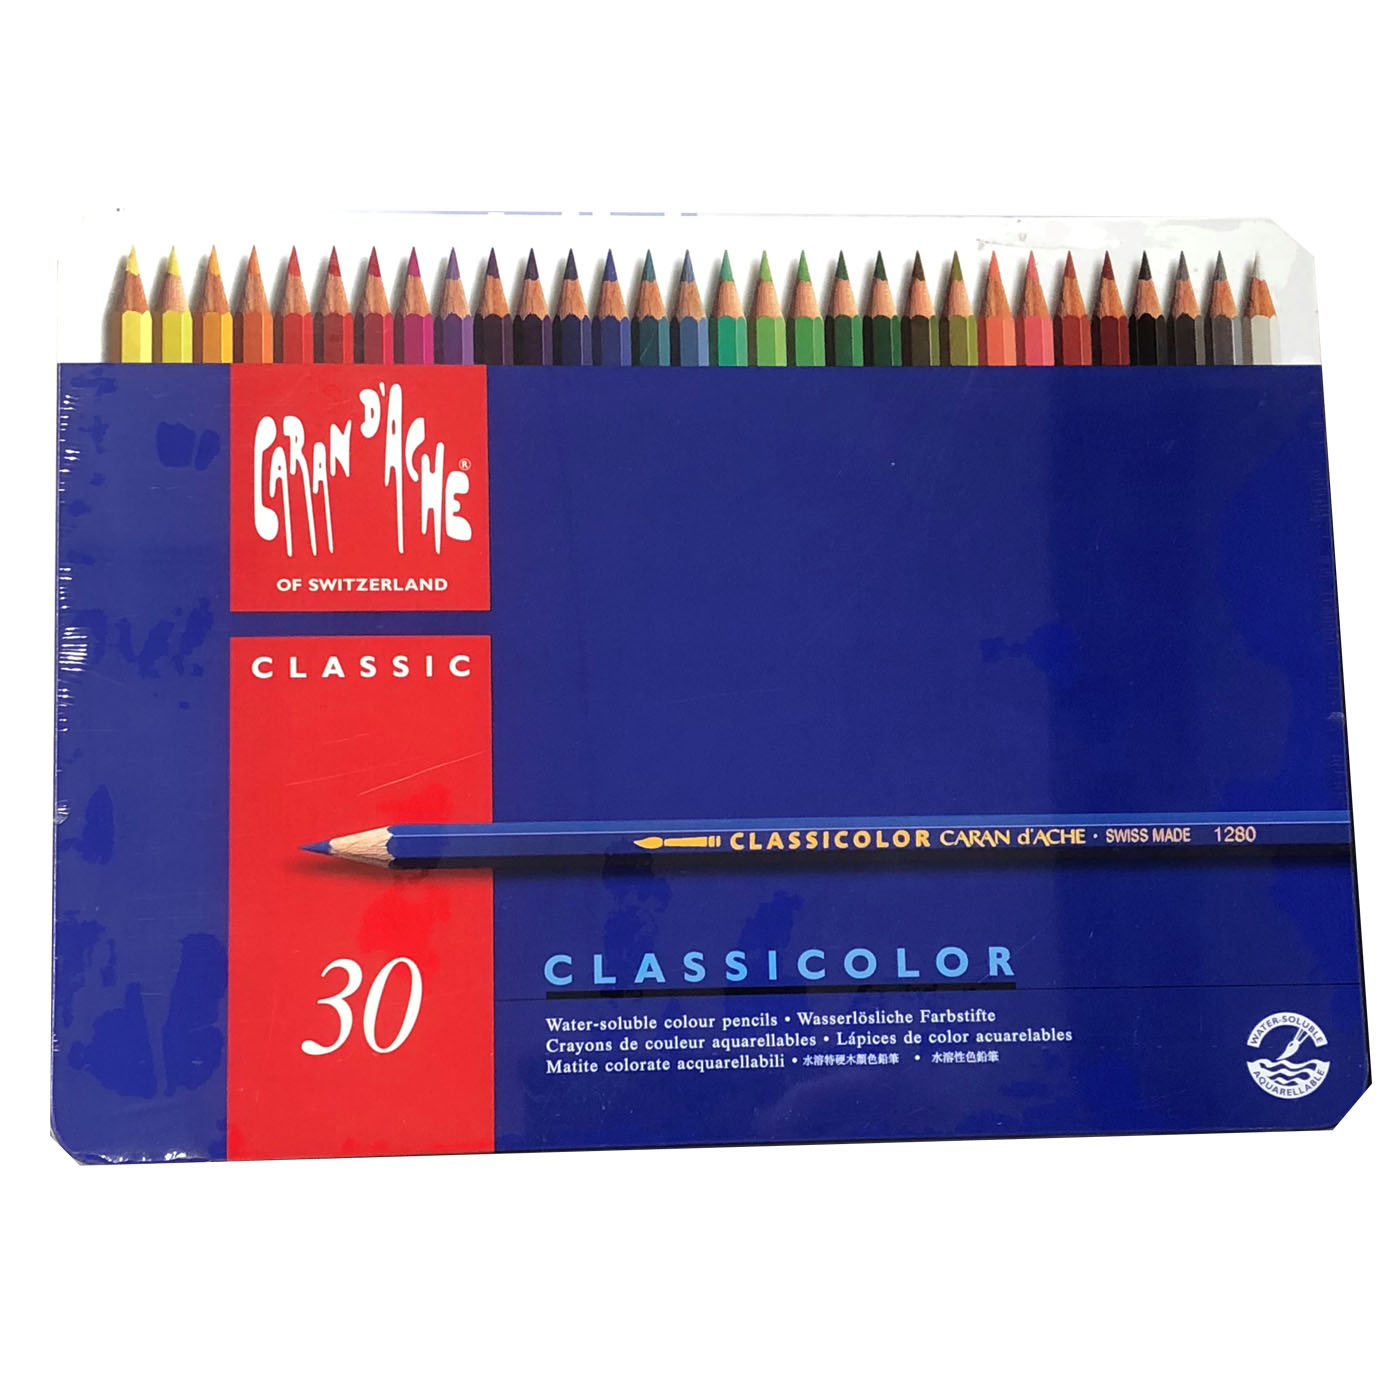 コトブキヤ文具店ONLINESHOP / カランダッシュ CARAN D'ACHE / CLASSICOLOR クラシカラー 水溶性色鉛筆